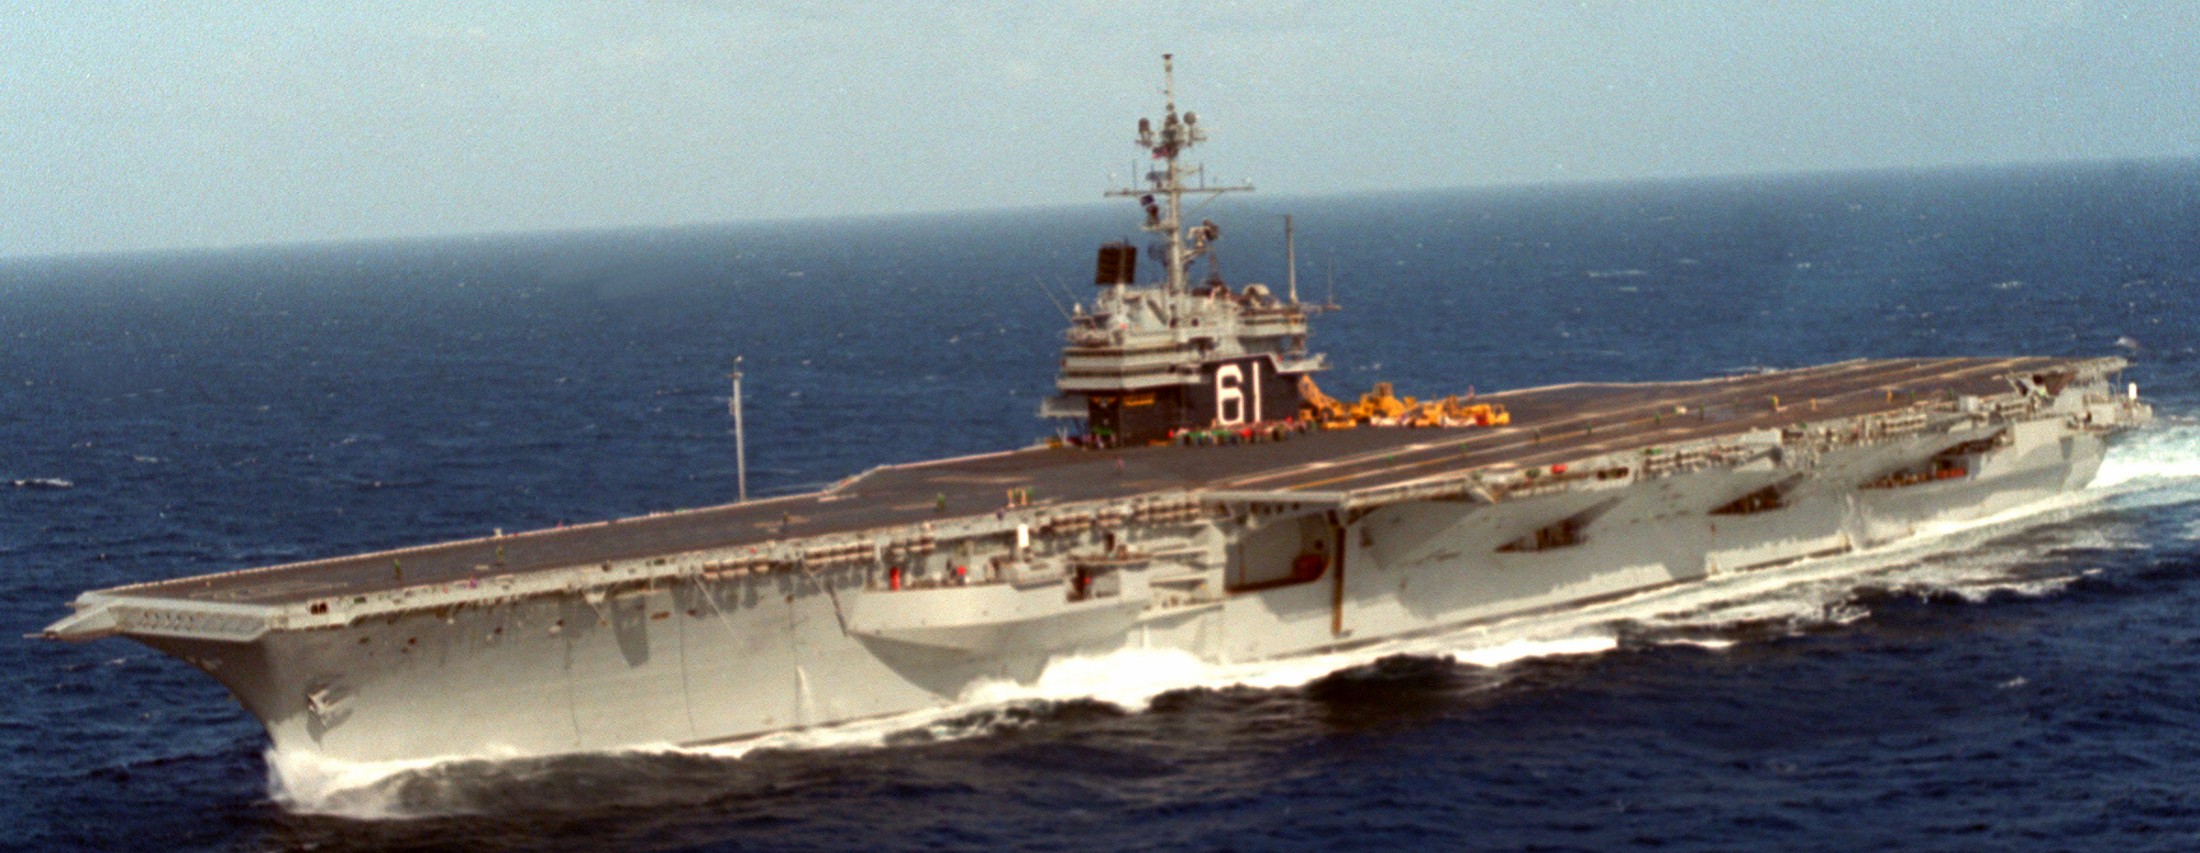 cv-61 uss ranger forrestal class aircraft carrier us navy subex 98